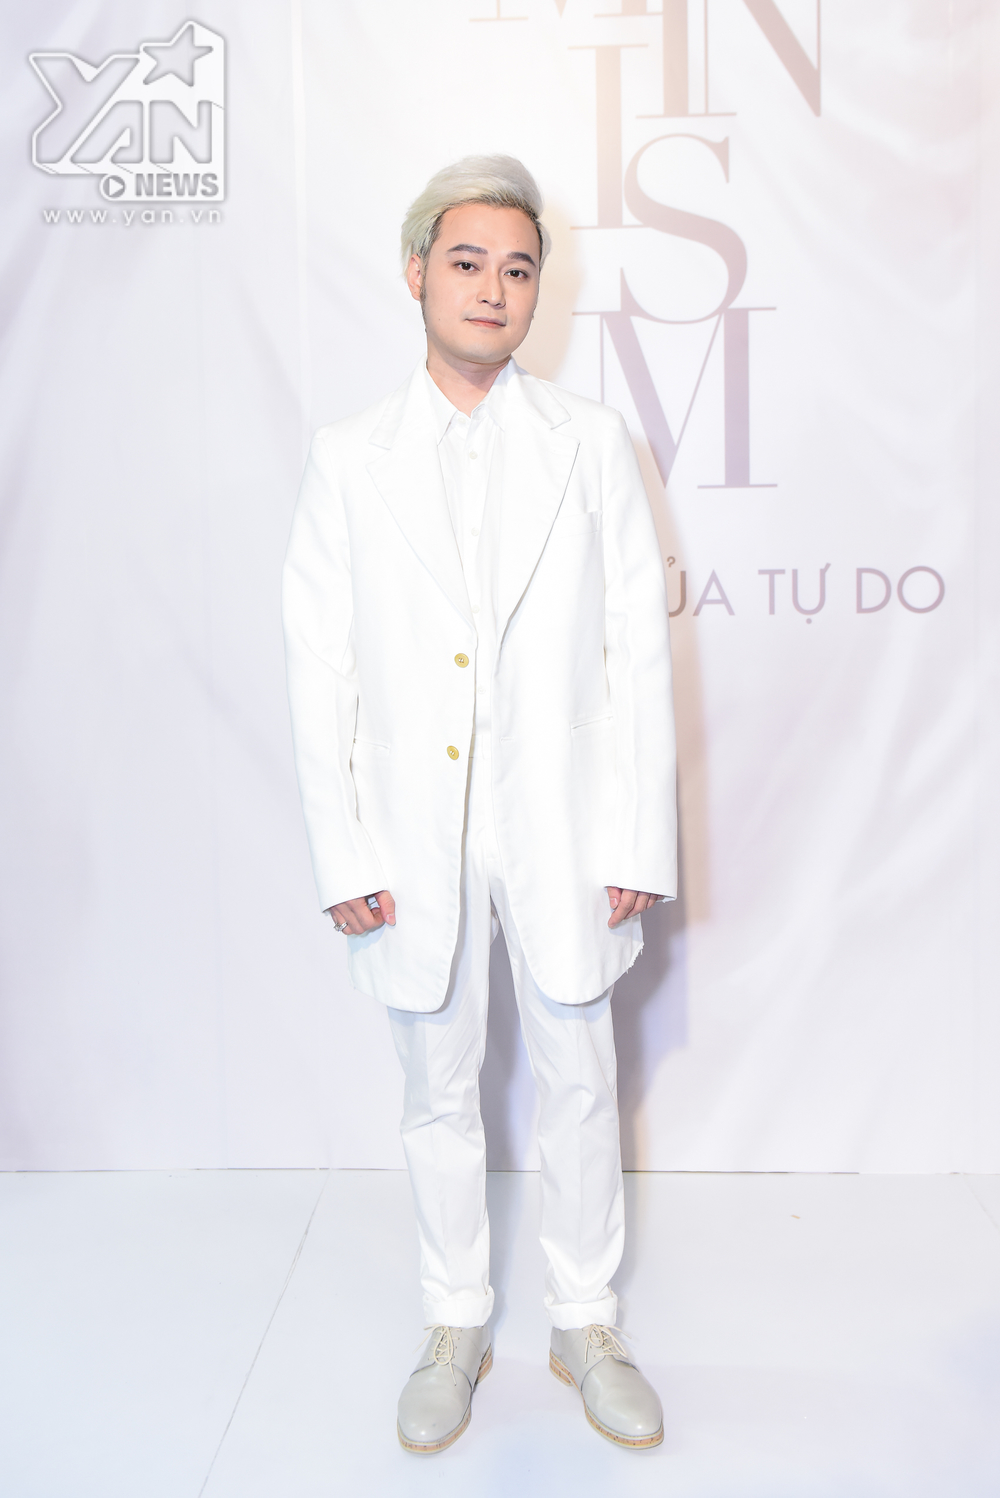 
Quang Vinh xuất hiện như chàng "bạch mã hoàng tử" với bộ outfit full trắng.